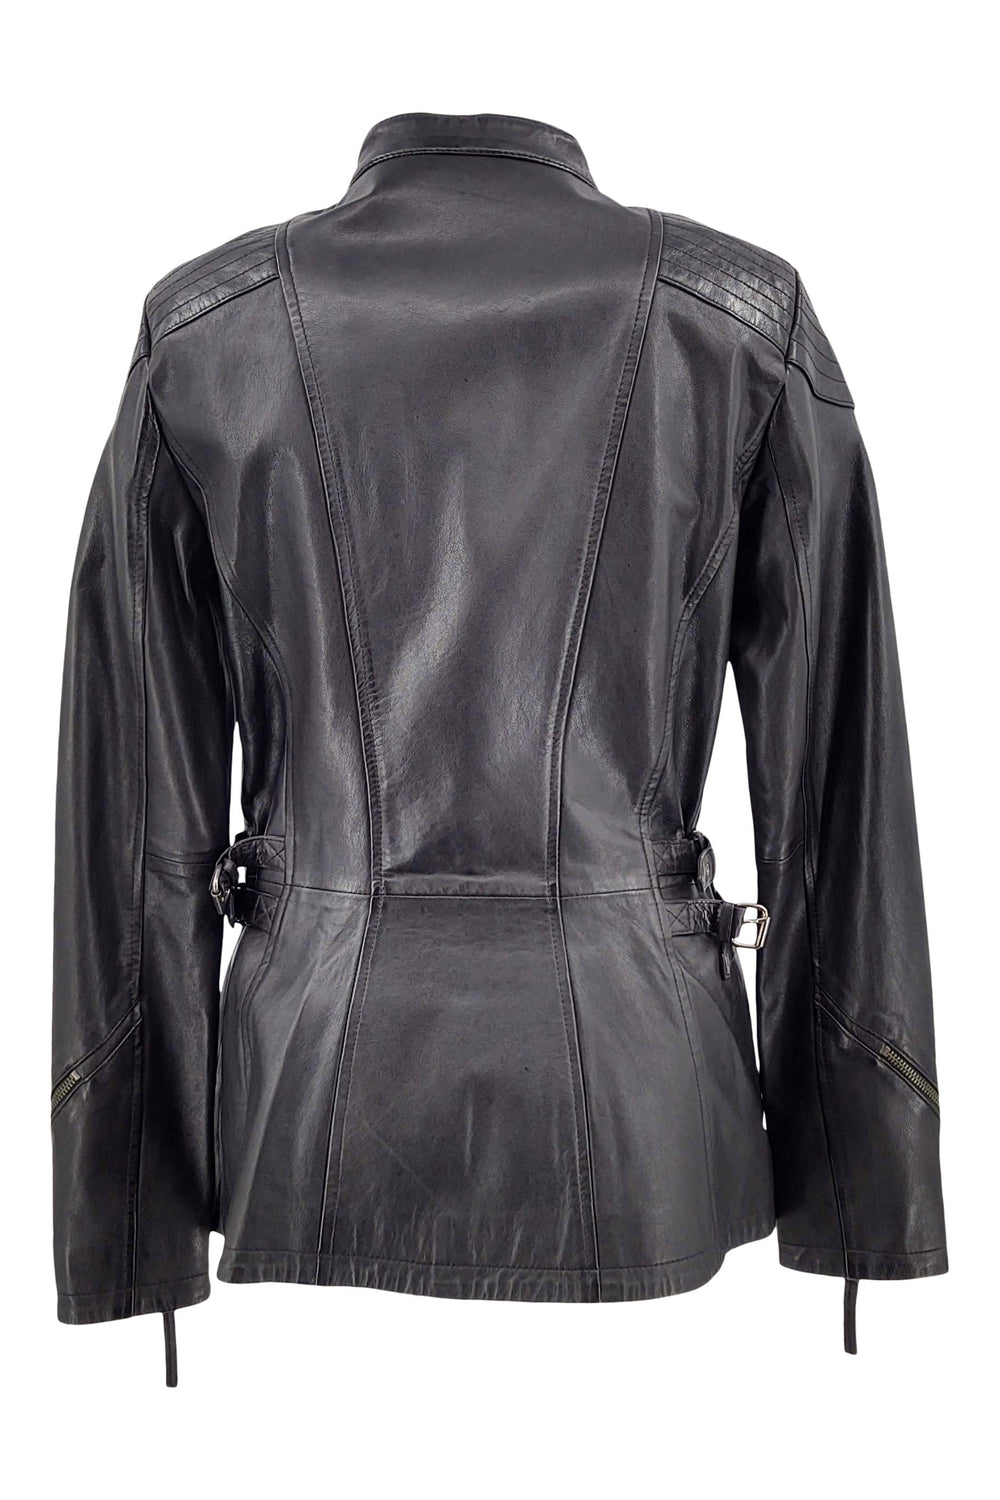 Frances - Lamb Copper Leather - Women - Black / Læder Skinds Jakke - Levinsky - Kvinde | STAMPE PELS